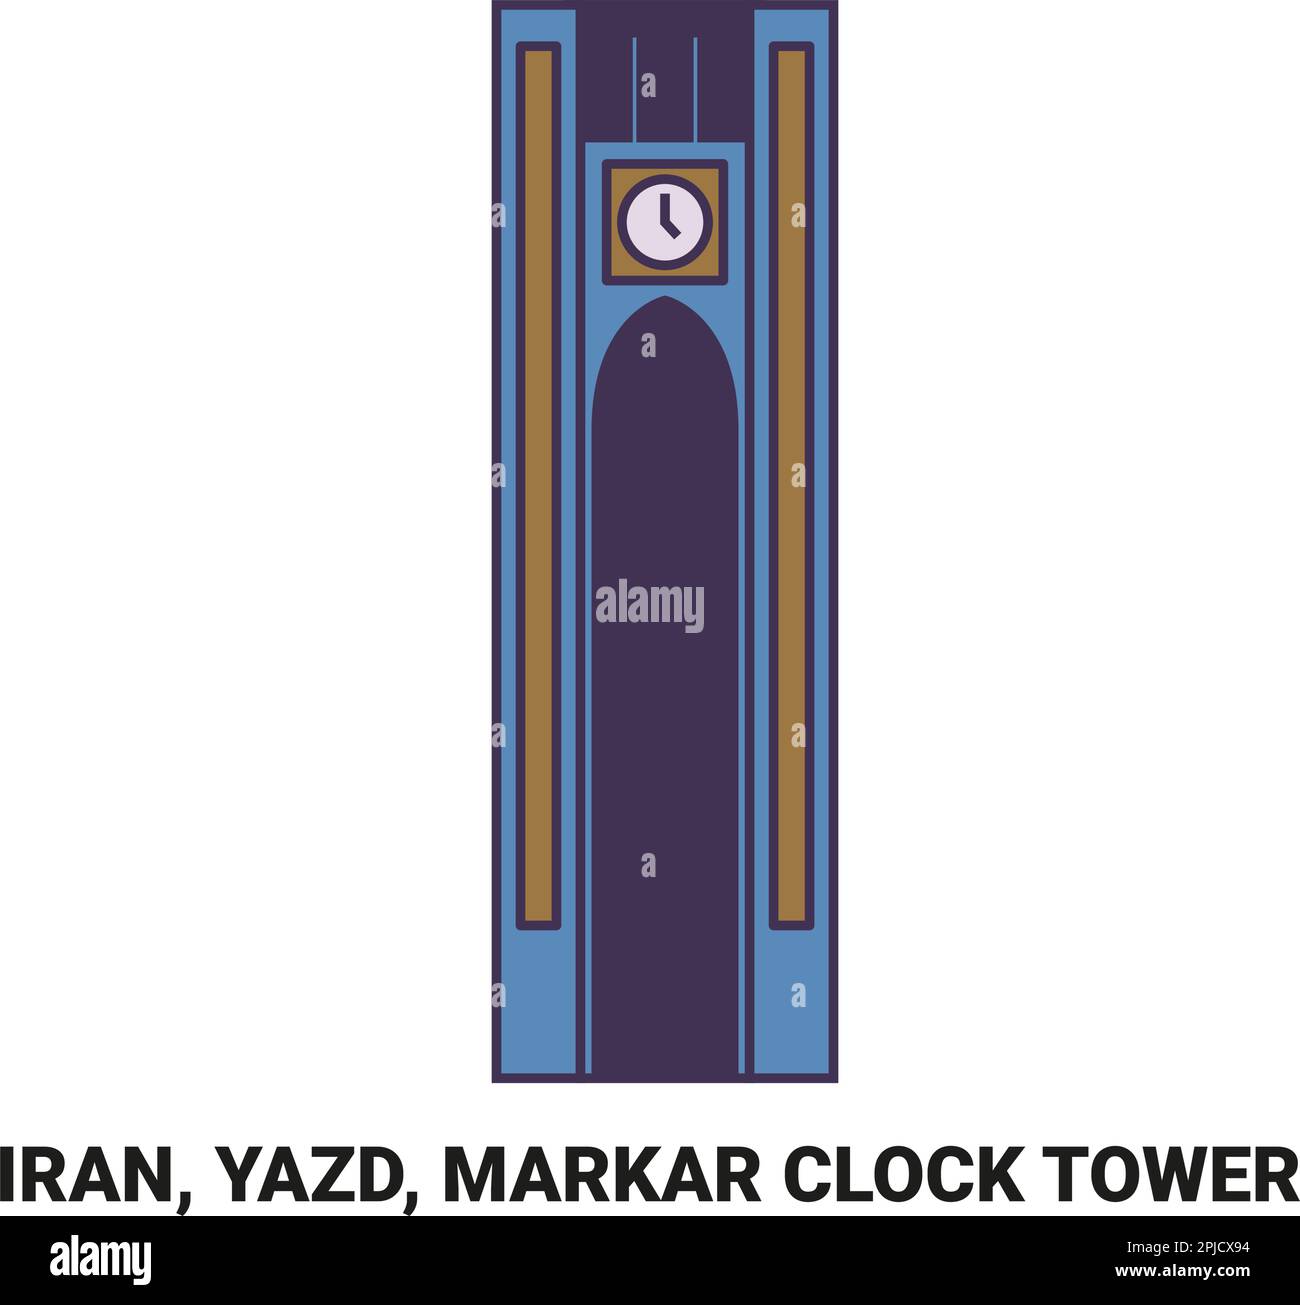 Iran, Yazd, Markar Clock Tower travel landmark vector illustration Stock Vector